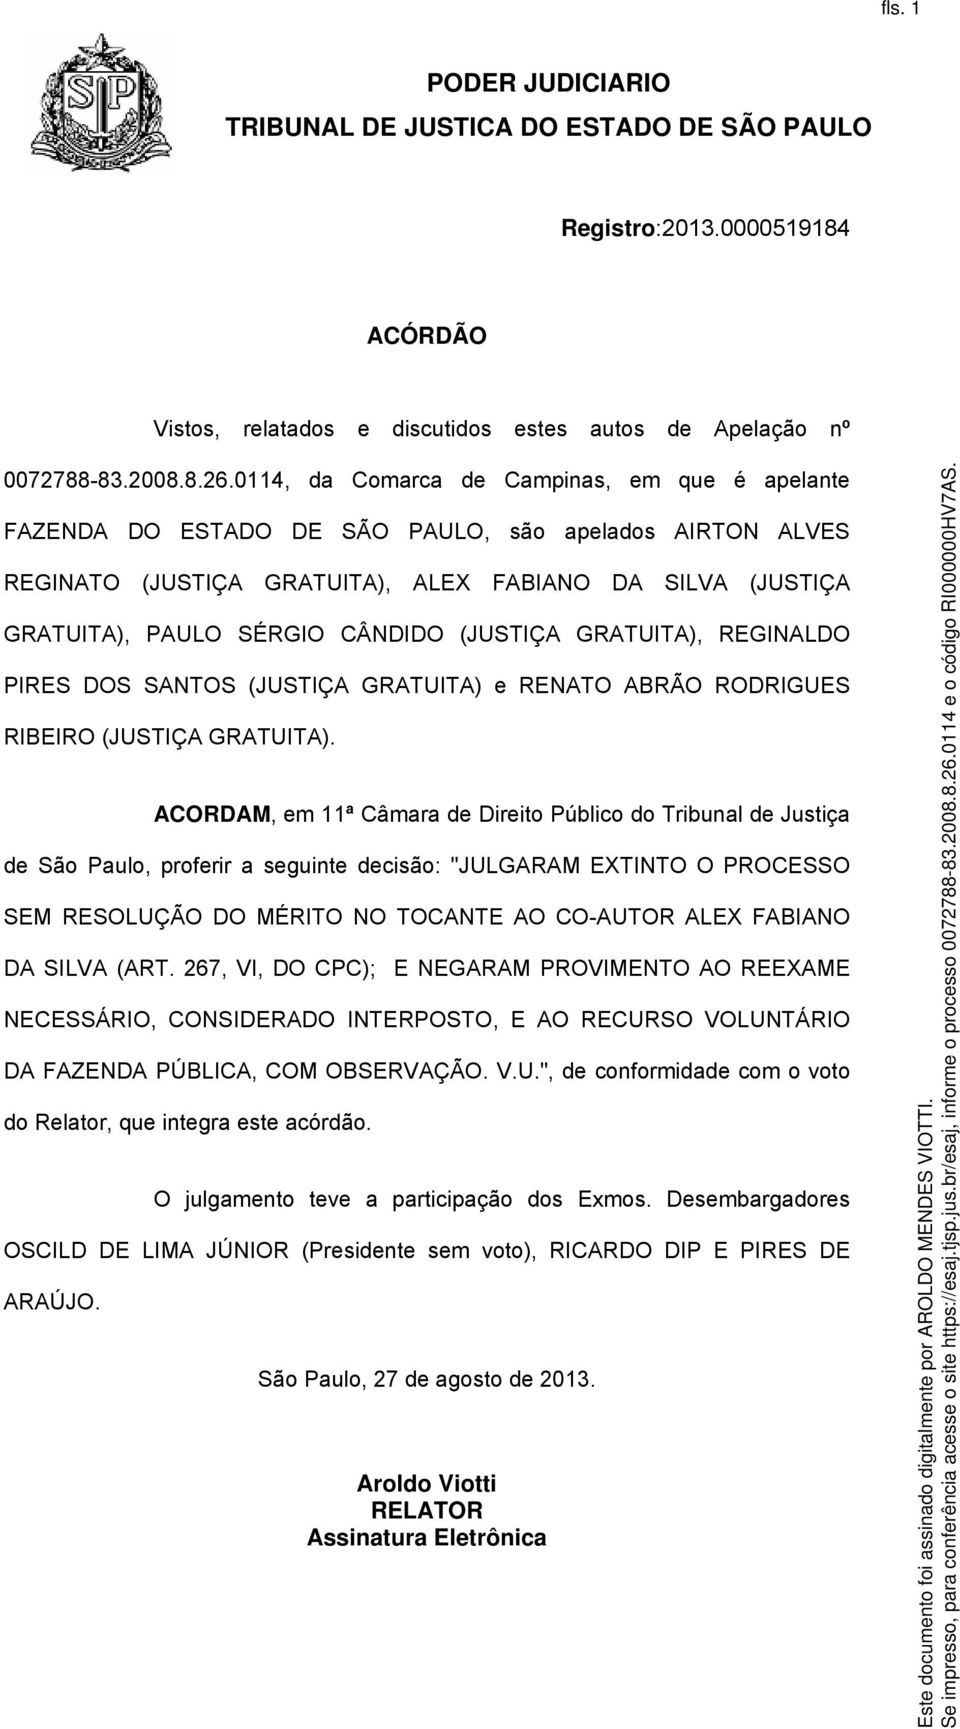 (JUSTIÇA GRATUITA), REGINALDO PIRES DOS SANTOS (JUSTIÇA GRATUITA) e RENATO ABRÃO RODRIGUES RIBEIRO (JUSTIÇA GRATUITA).